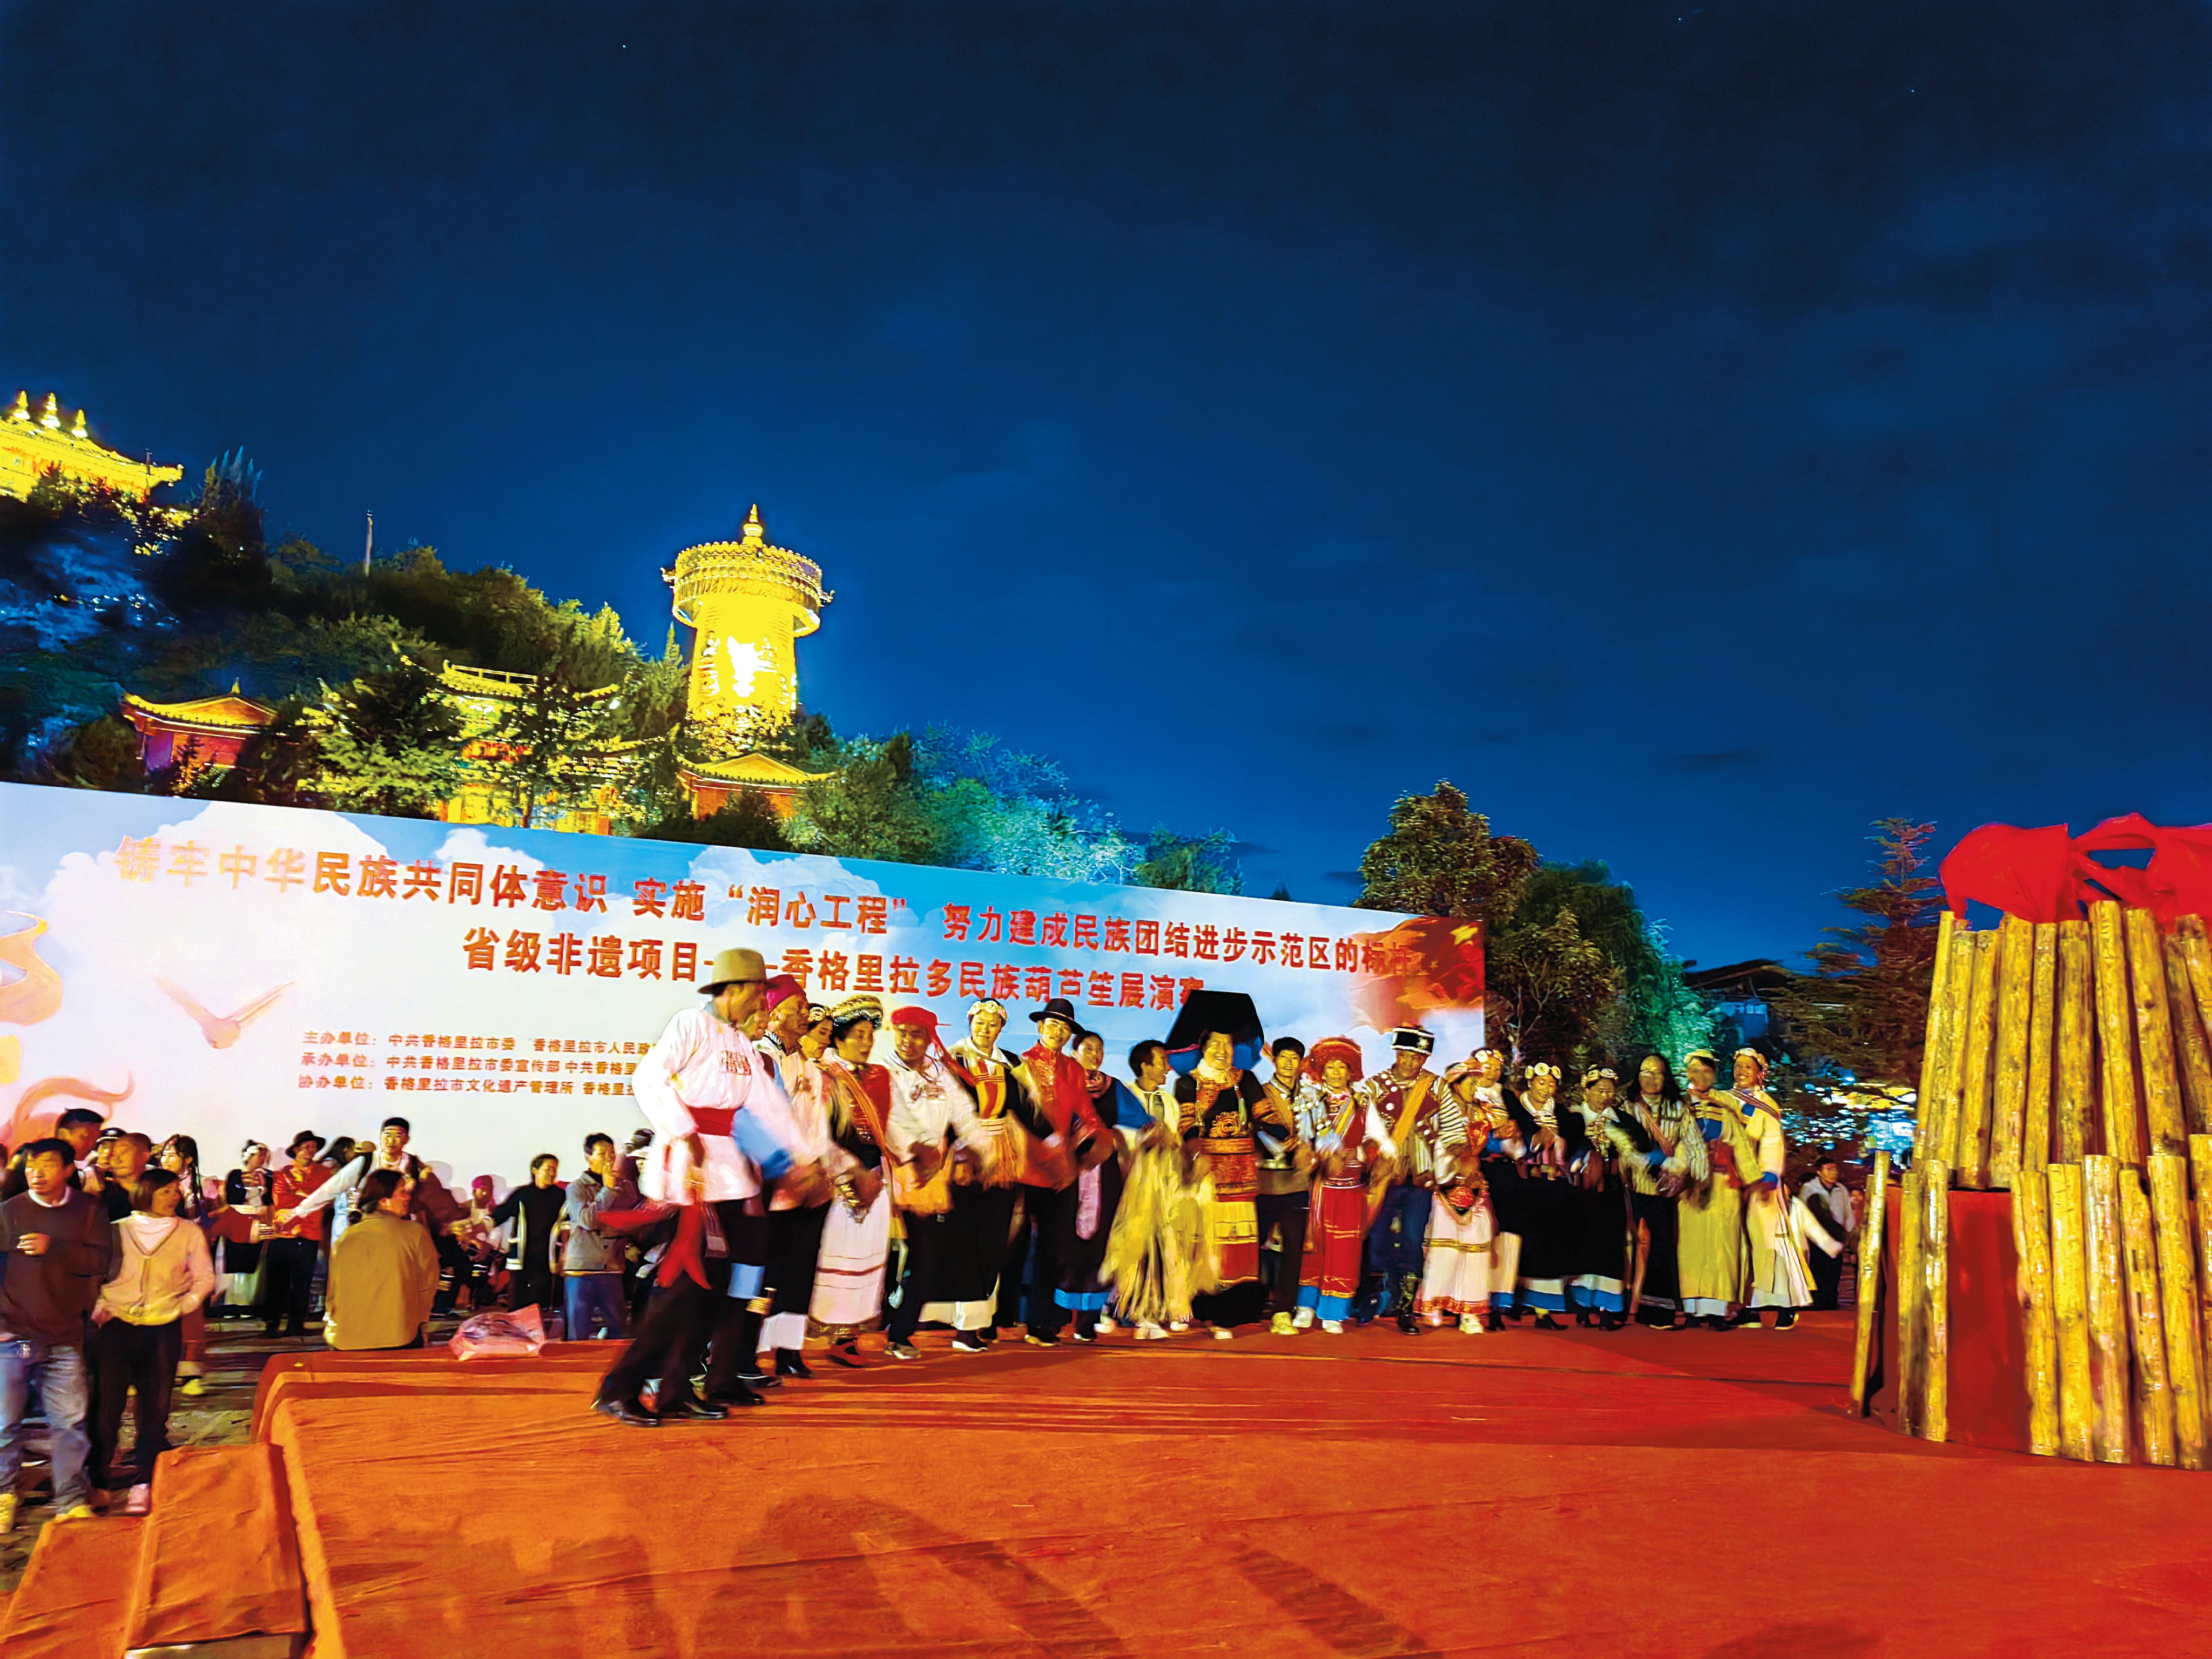 周海鸥-香格里拉市多民族葫芦笙展演赛活动吸引了众多游客一起参与.jpg